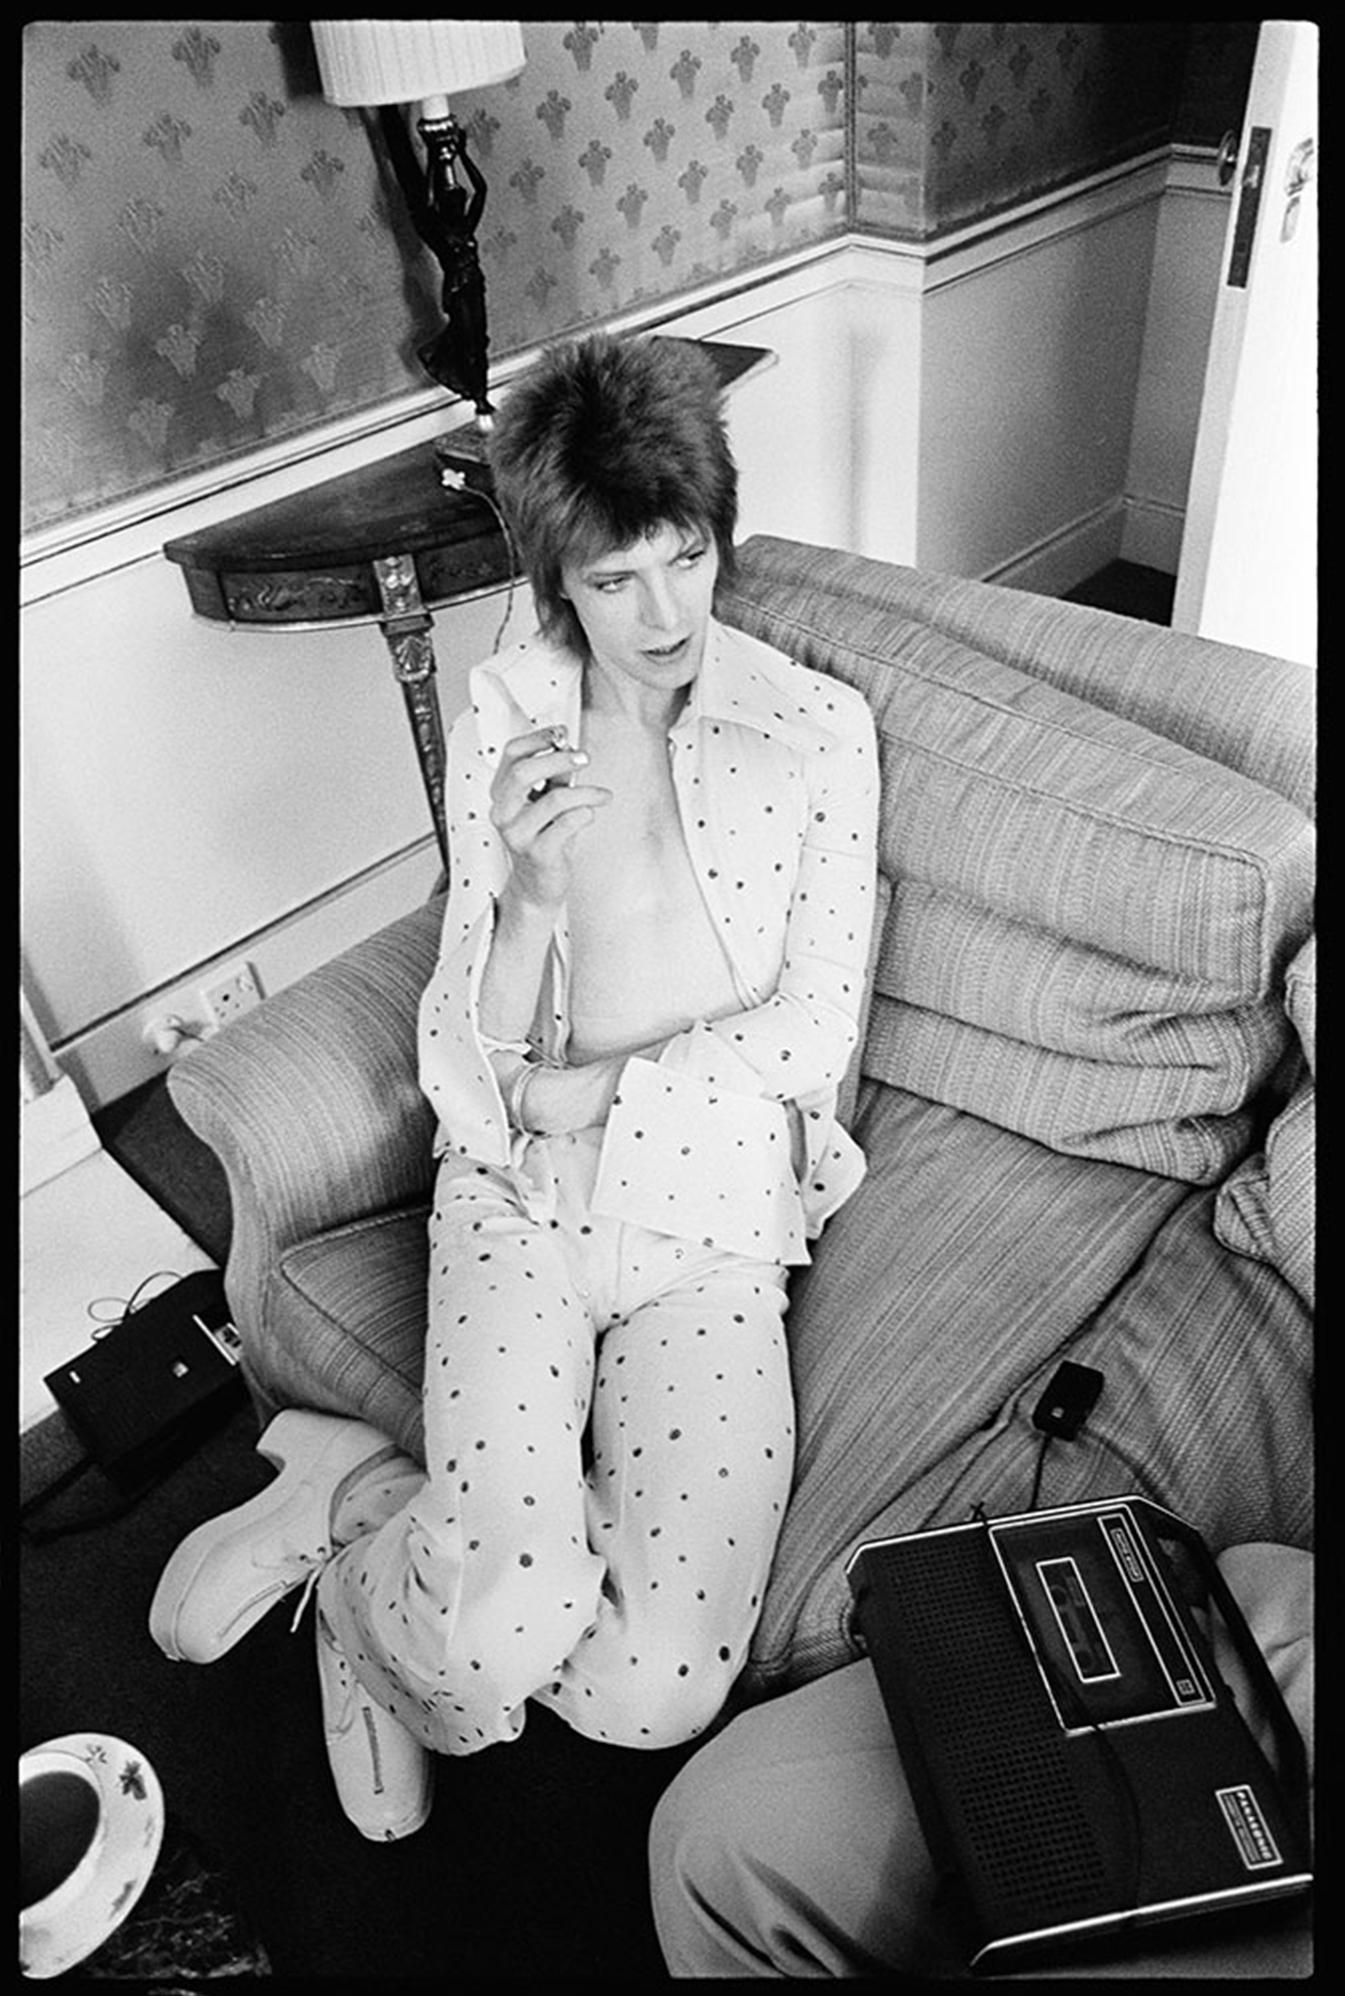 Alec Byrne Portrait Photograph - David Bowie at The Dorchester Hotel 1972